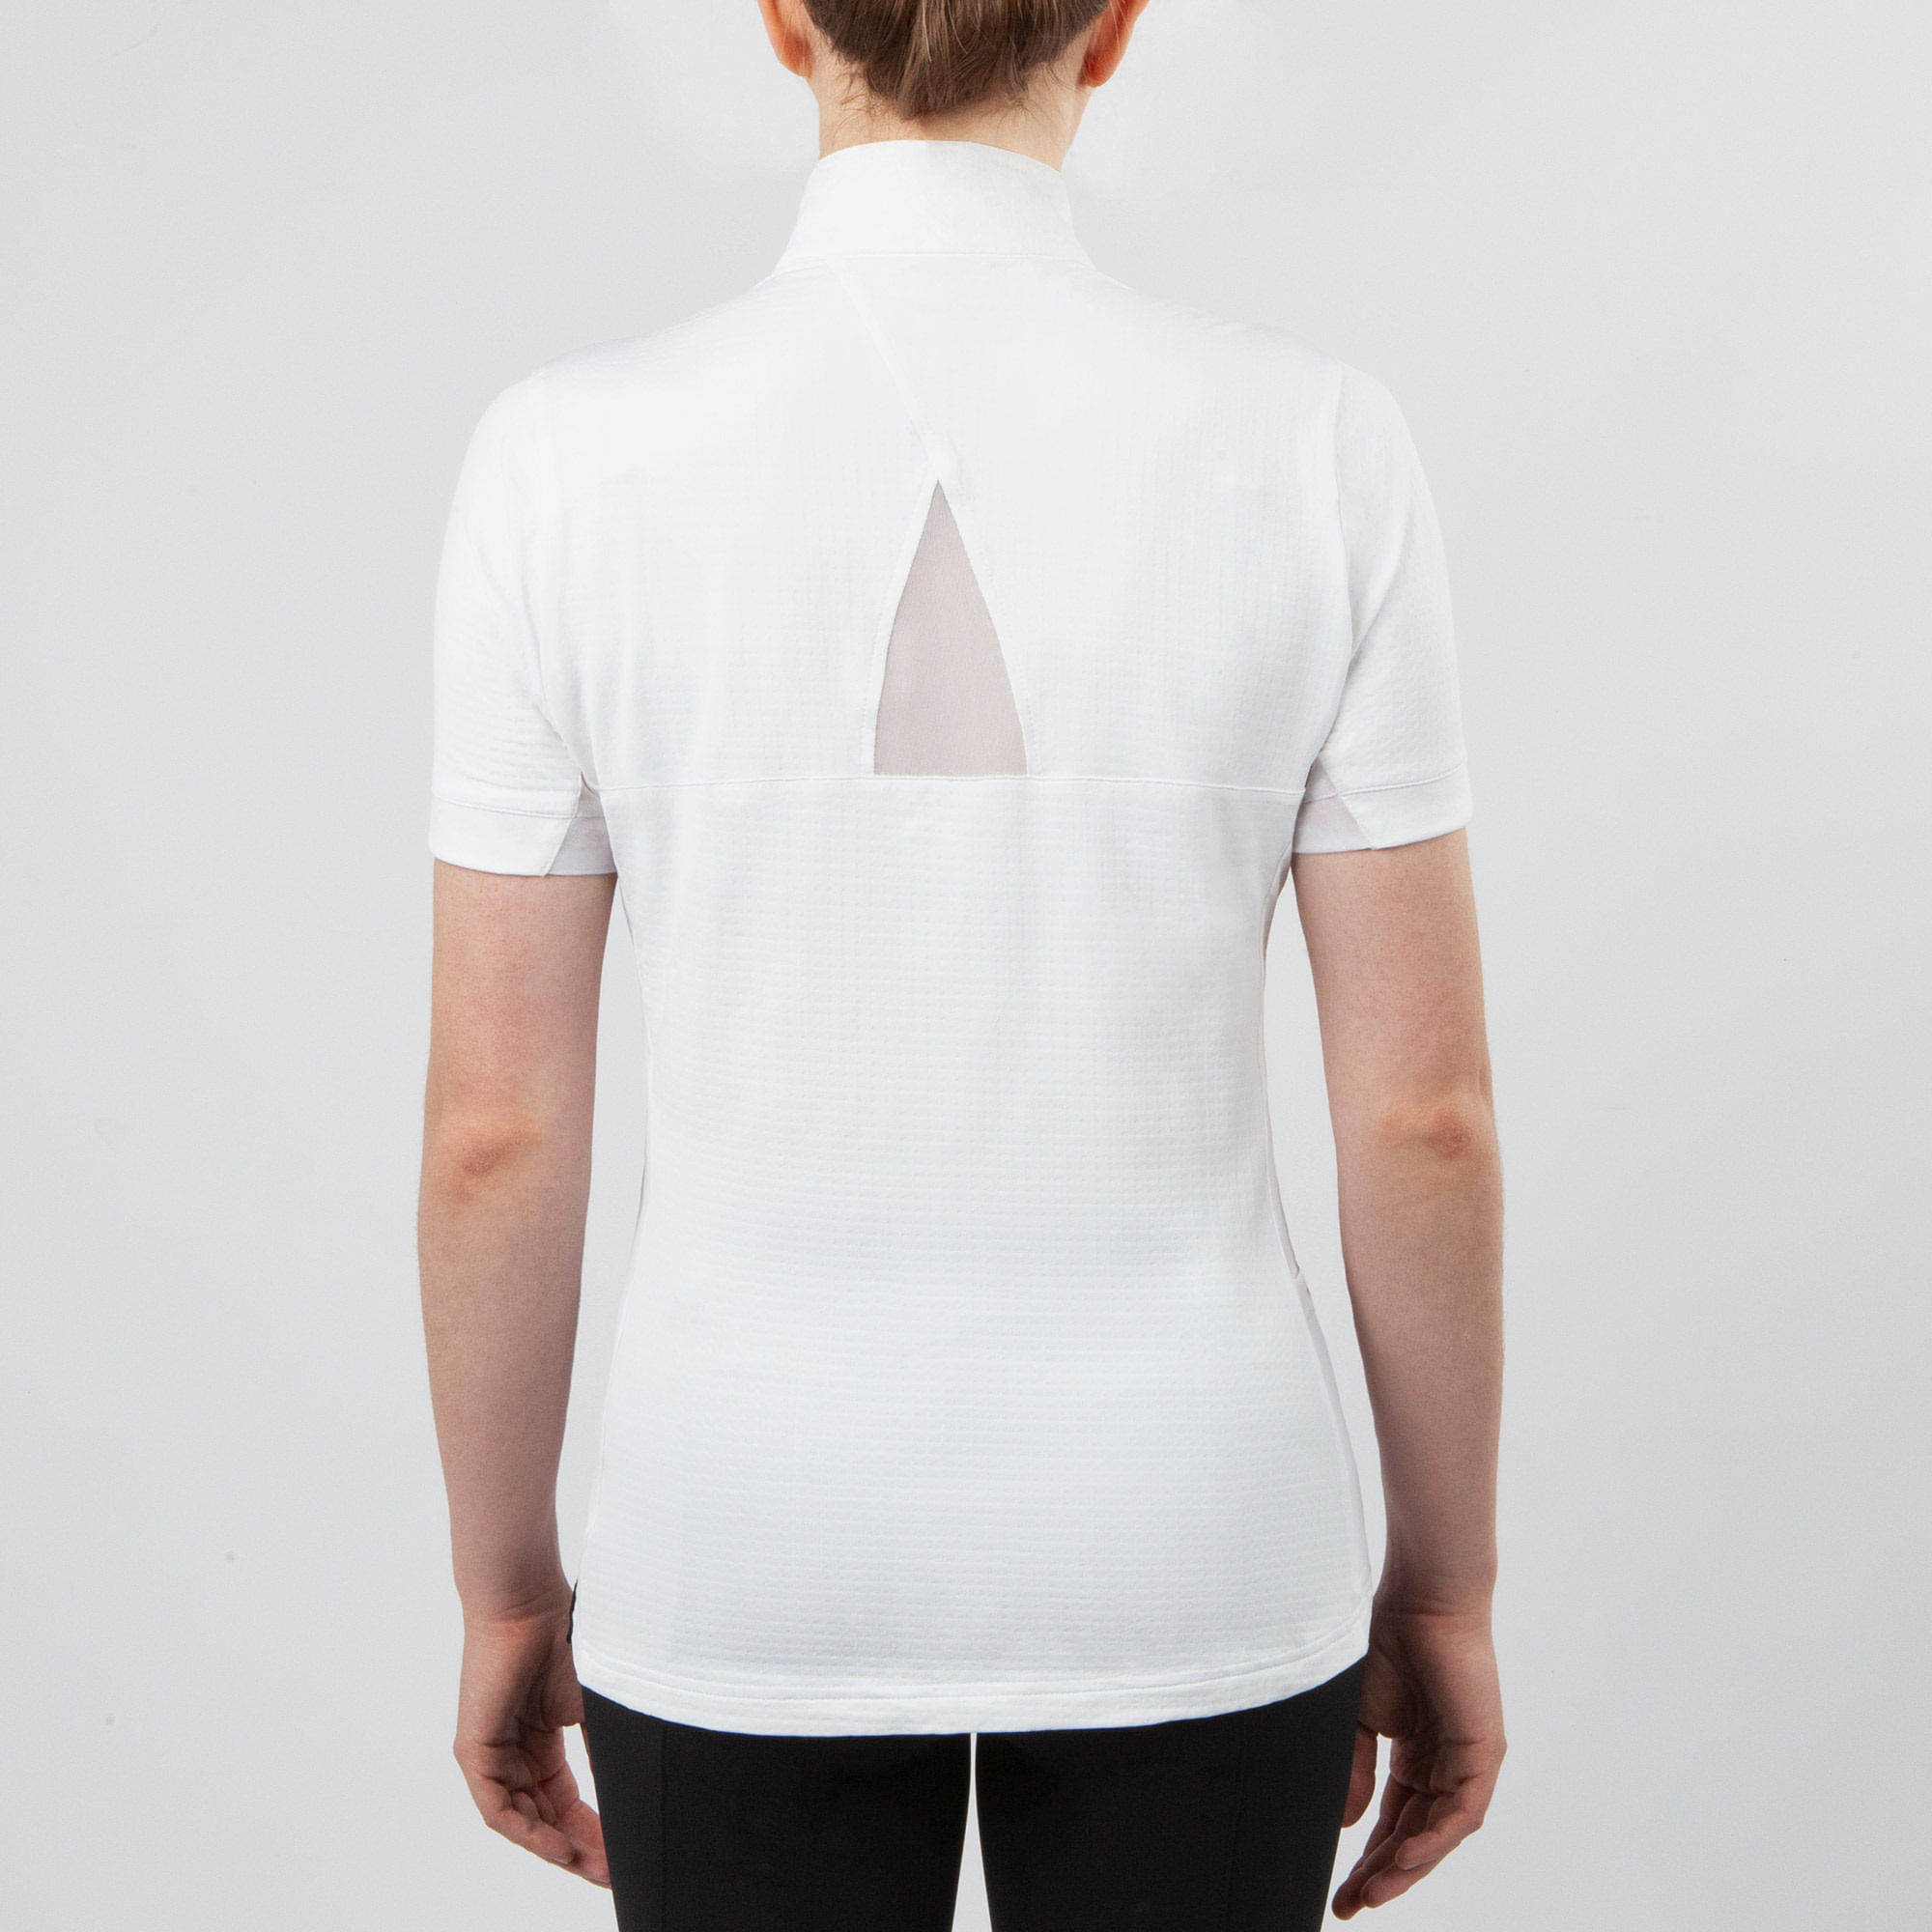 Irideon Ciara Icefil Short Sleeve Show Shirt Sm-White/White 